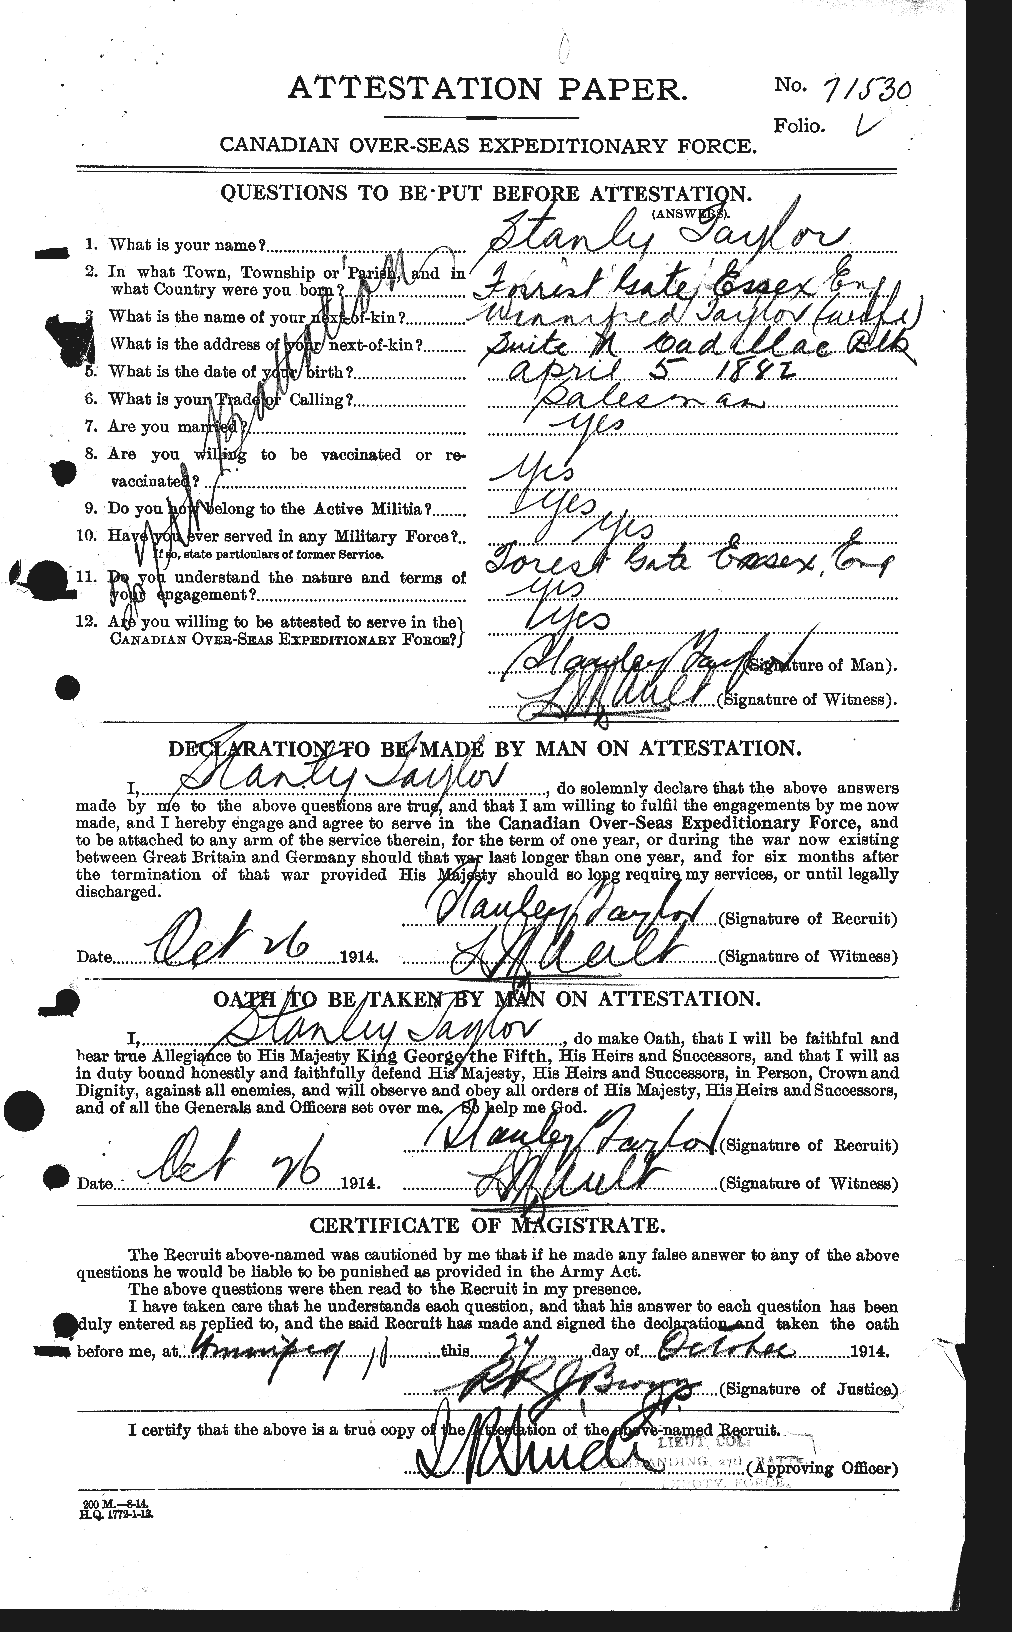 Dossiers du Personnel de la Première Guerre mondiale - CEC 627911a